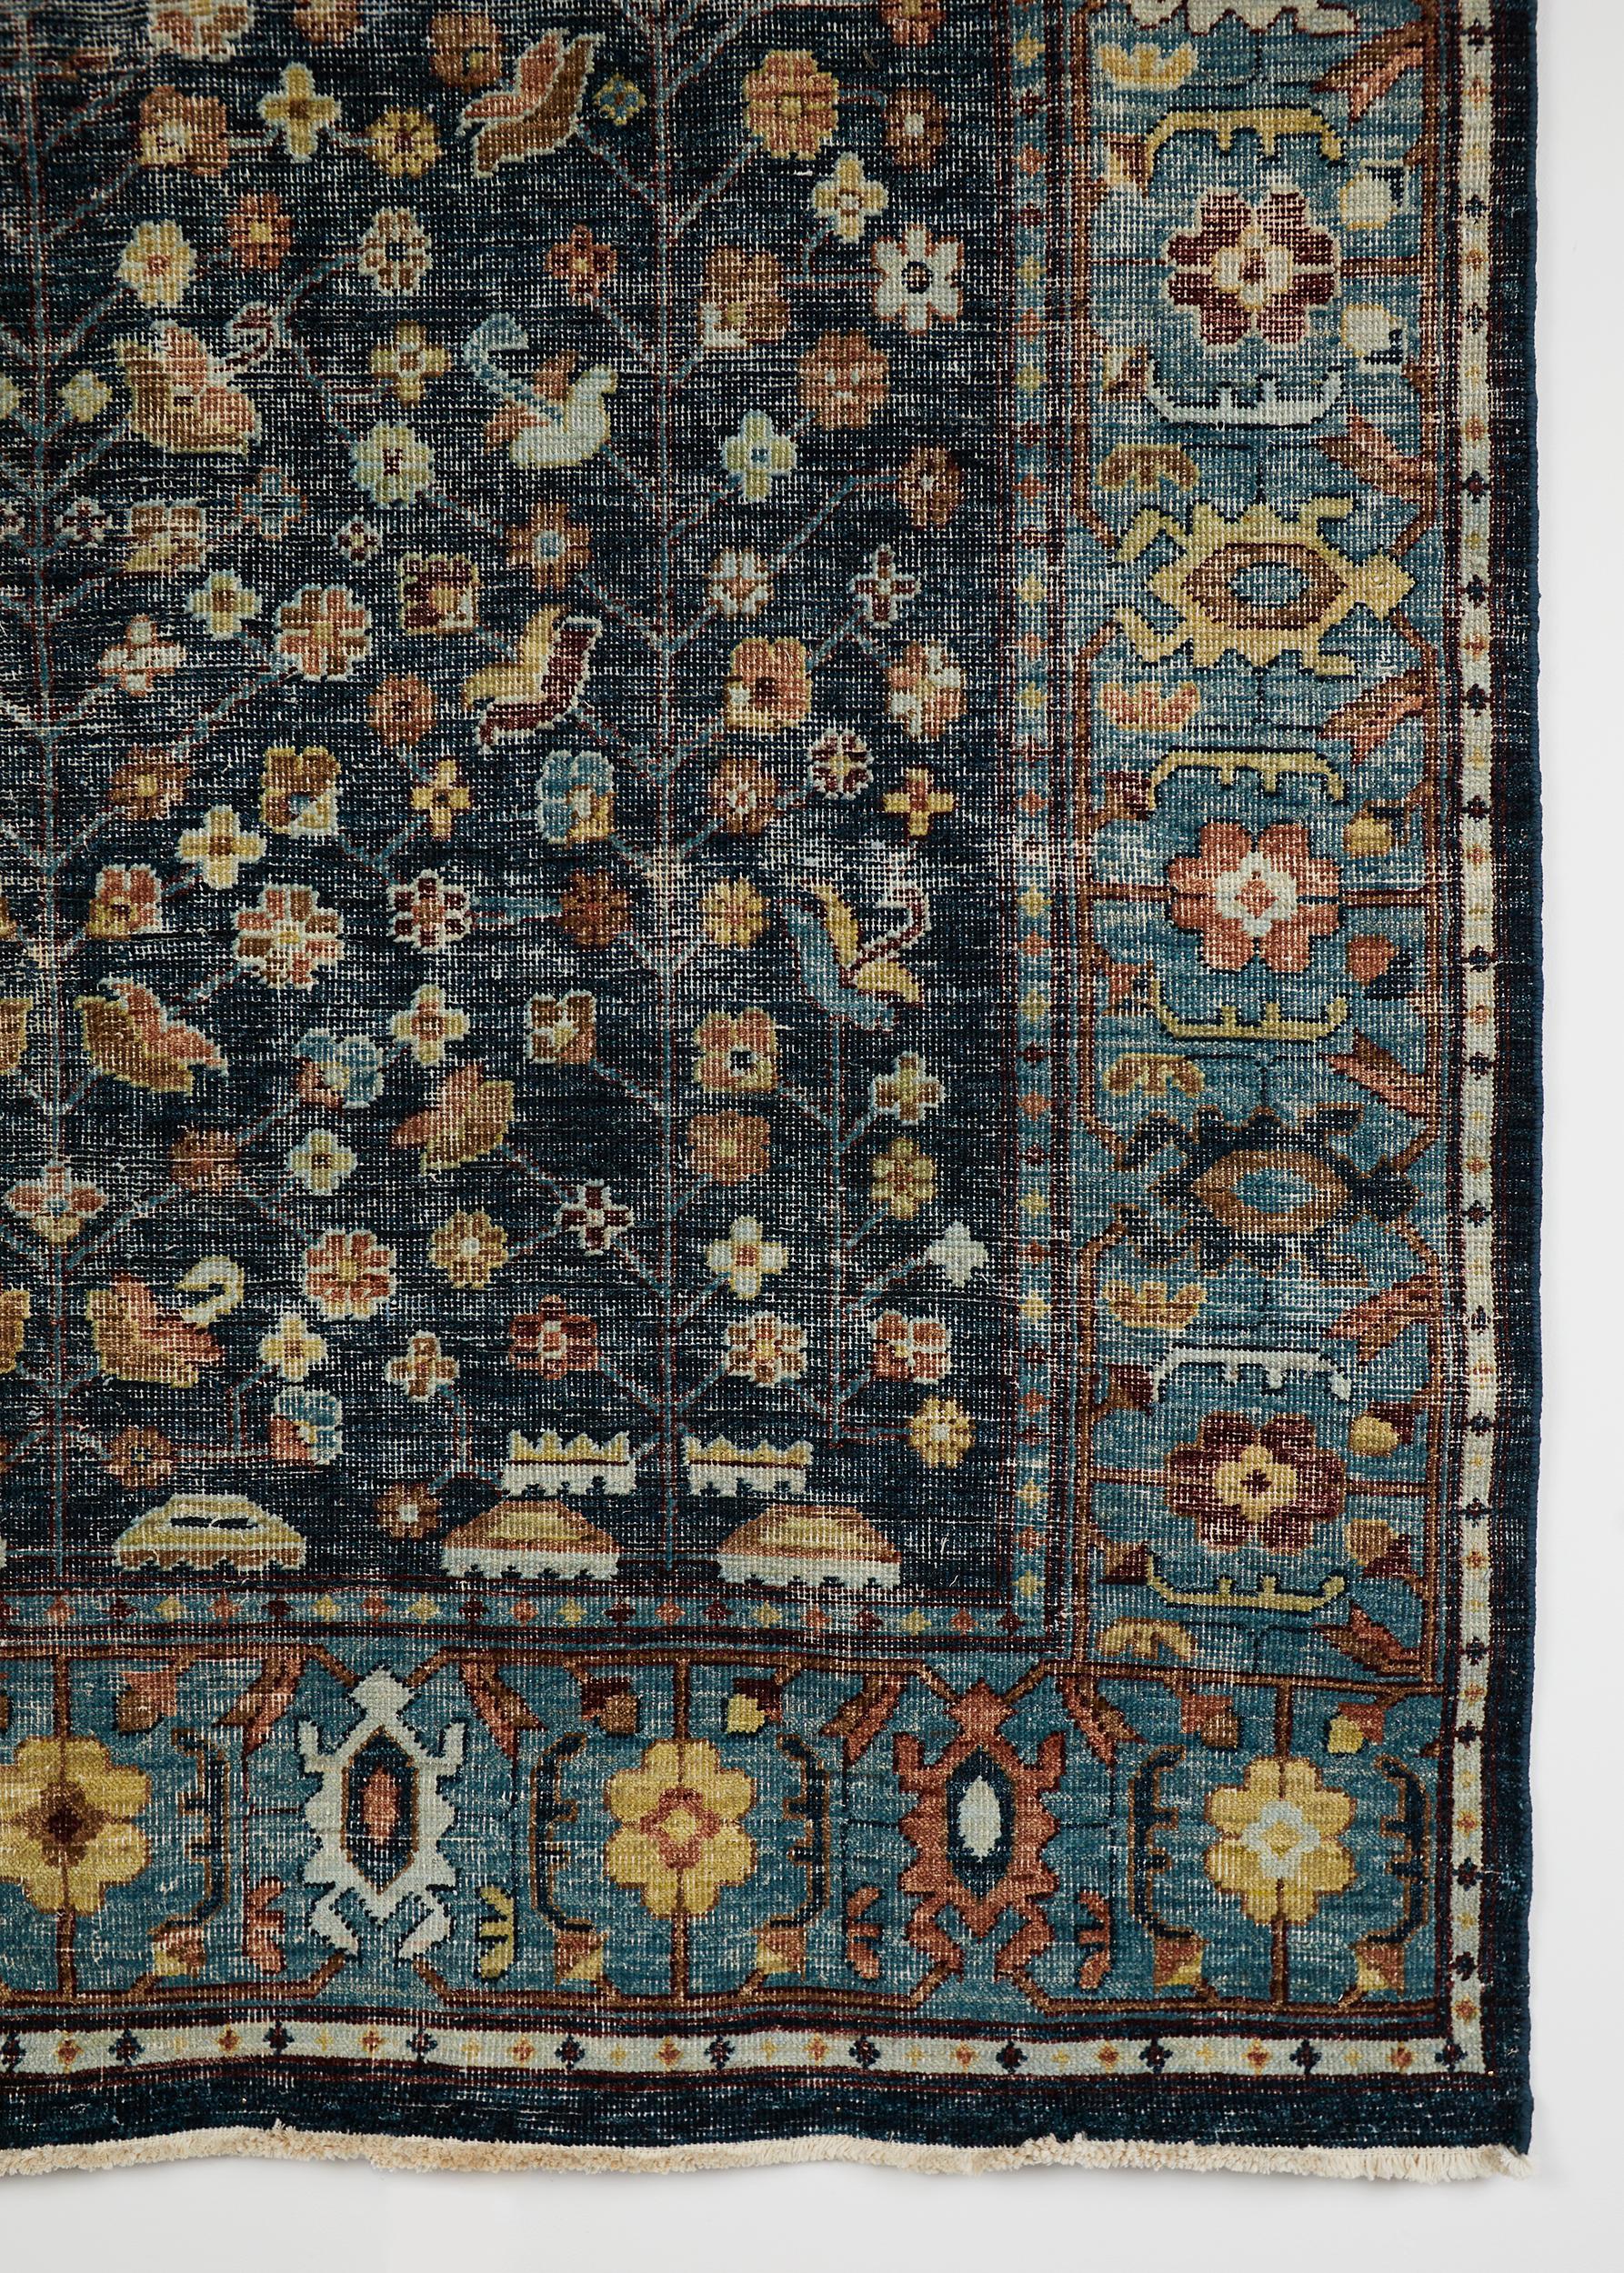 The Blue Moon Rug

Ein handgeknüpfter Teppich aus 100% Ghazni-Wolle.

Hergestellt in Pakistan. 

Dieser Teppich wurde entworfen, um die Stimmung eines schönen Tages im August einzufangen, als wir in der Abenddämmerung durch die Felder des Alentejo